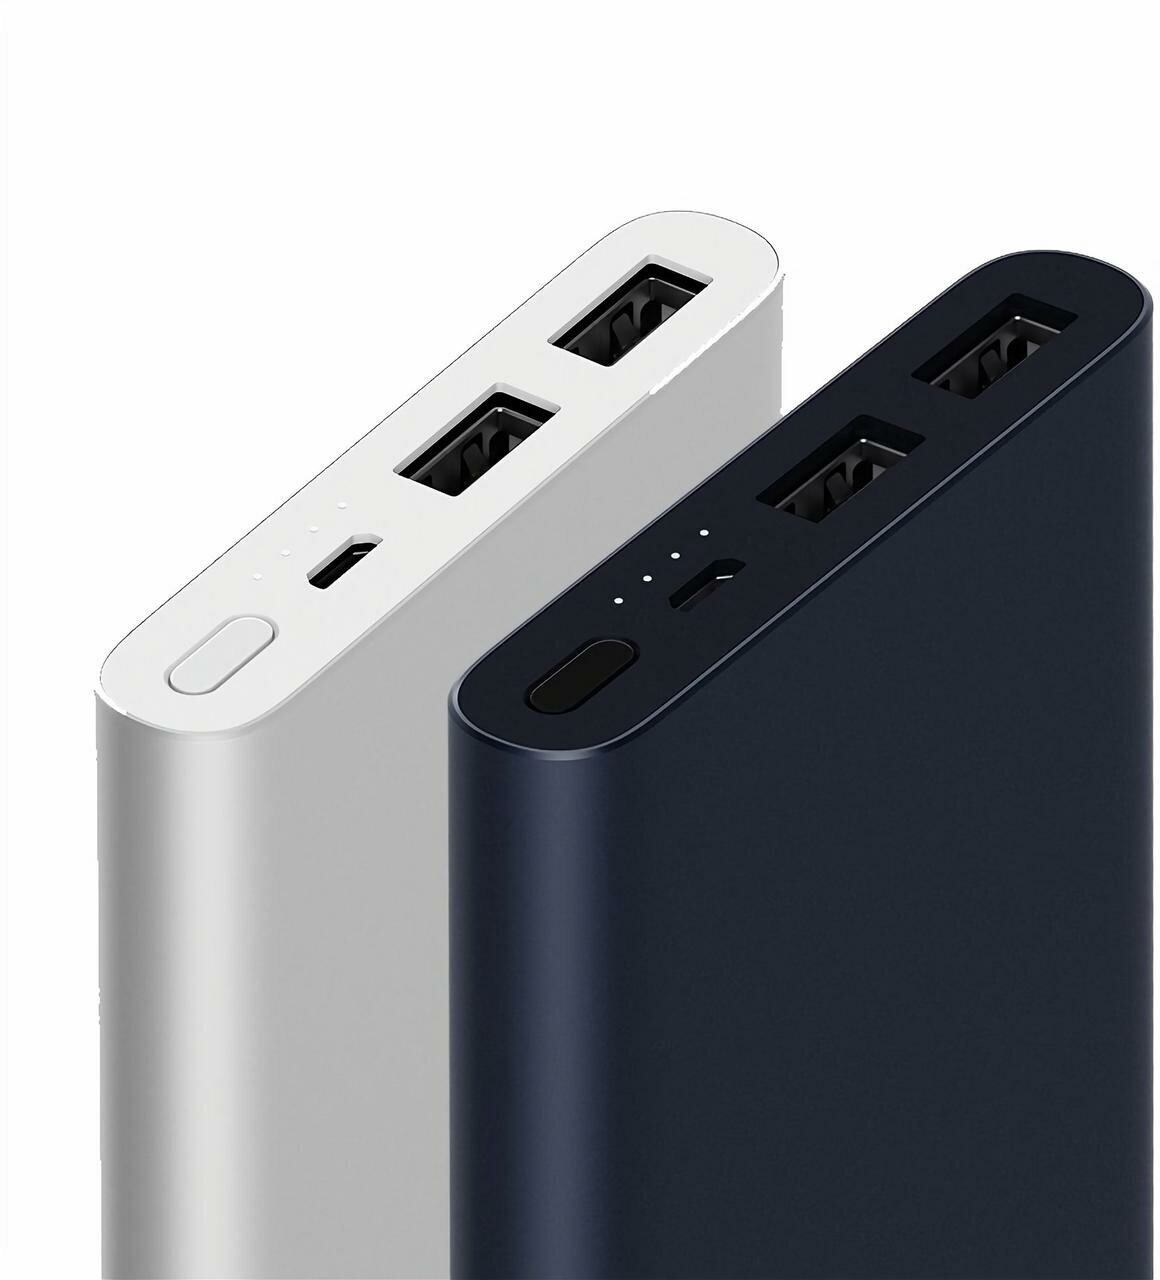 Портативный аккумулятор Xiaomi Mi Power Bank 2S (2i) 10000